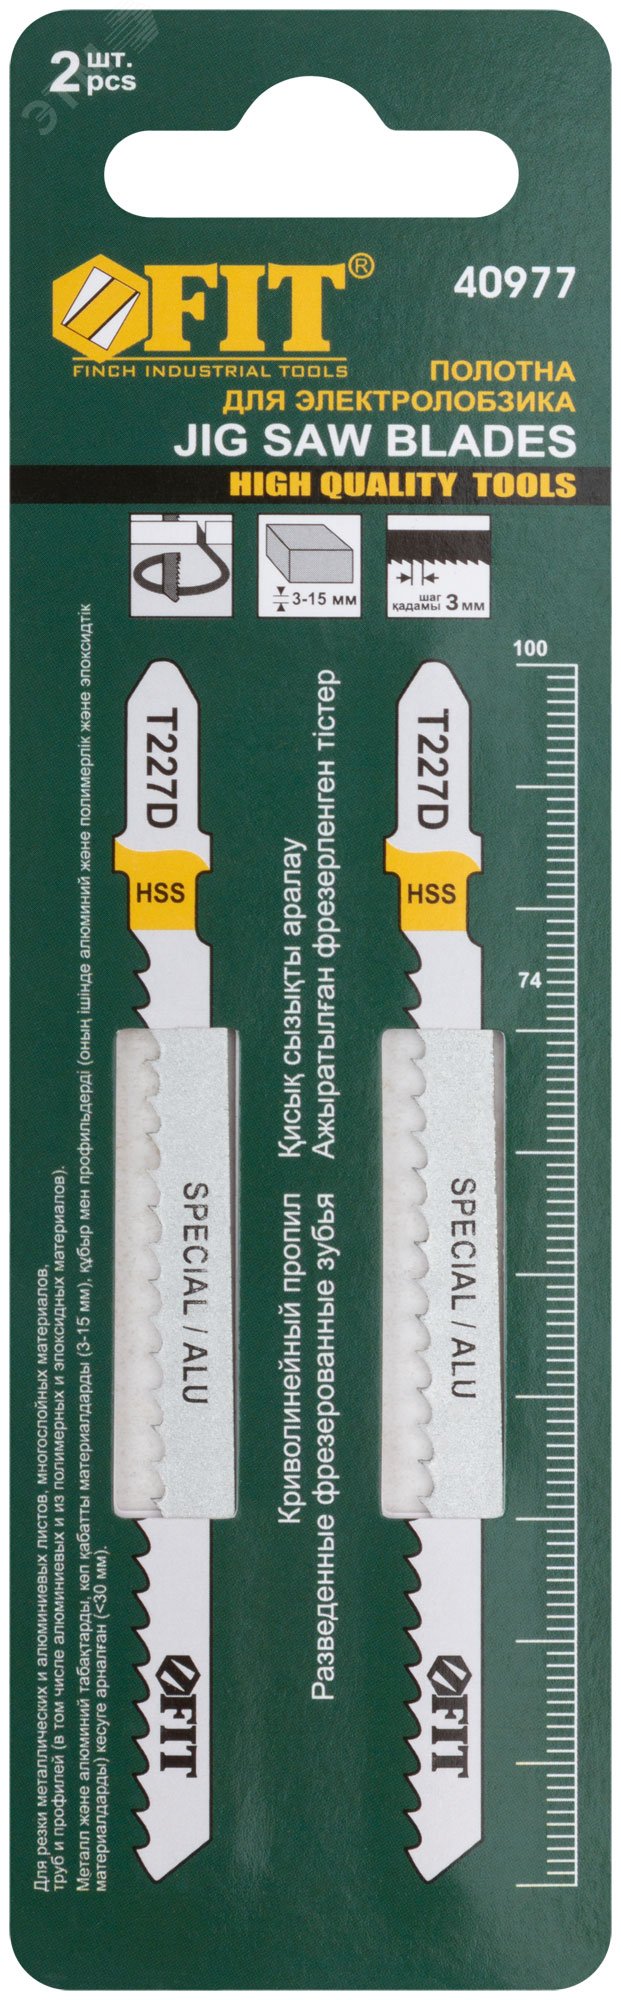 Полотна по металлу, полимерным и эпоксидным материалам, HSS, фрезерованн. зубья, 100/74/3 мм (T227D), 2 шт 40977 FIT - превью 2